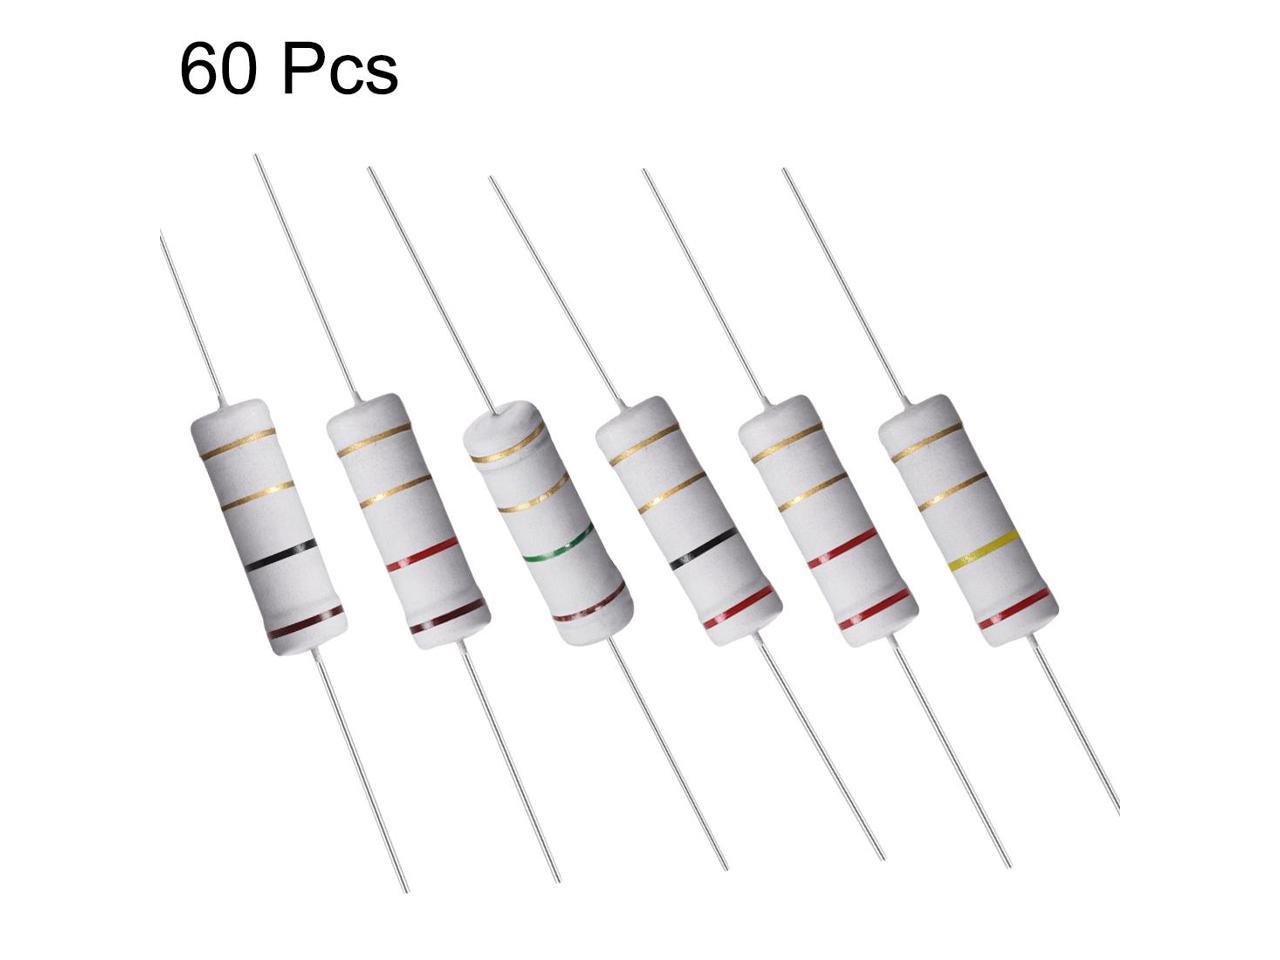 60pcs 2W 2 Watt Metal Oxide Film Resistor Axial Lead 33K Ohm ±5% Tolerance 